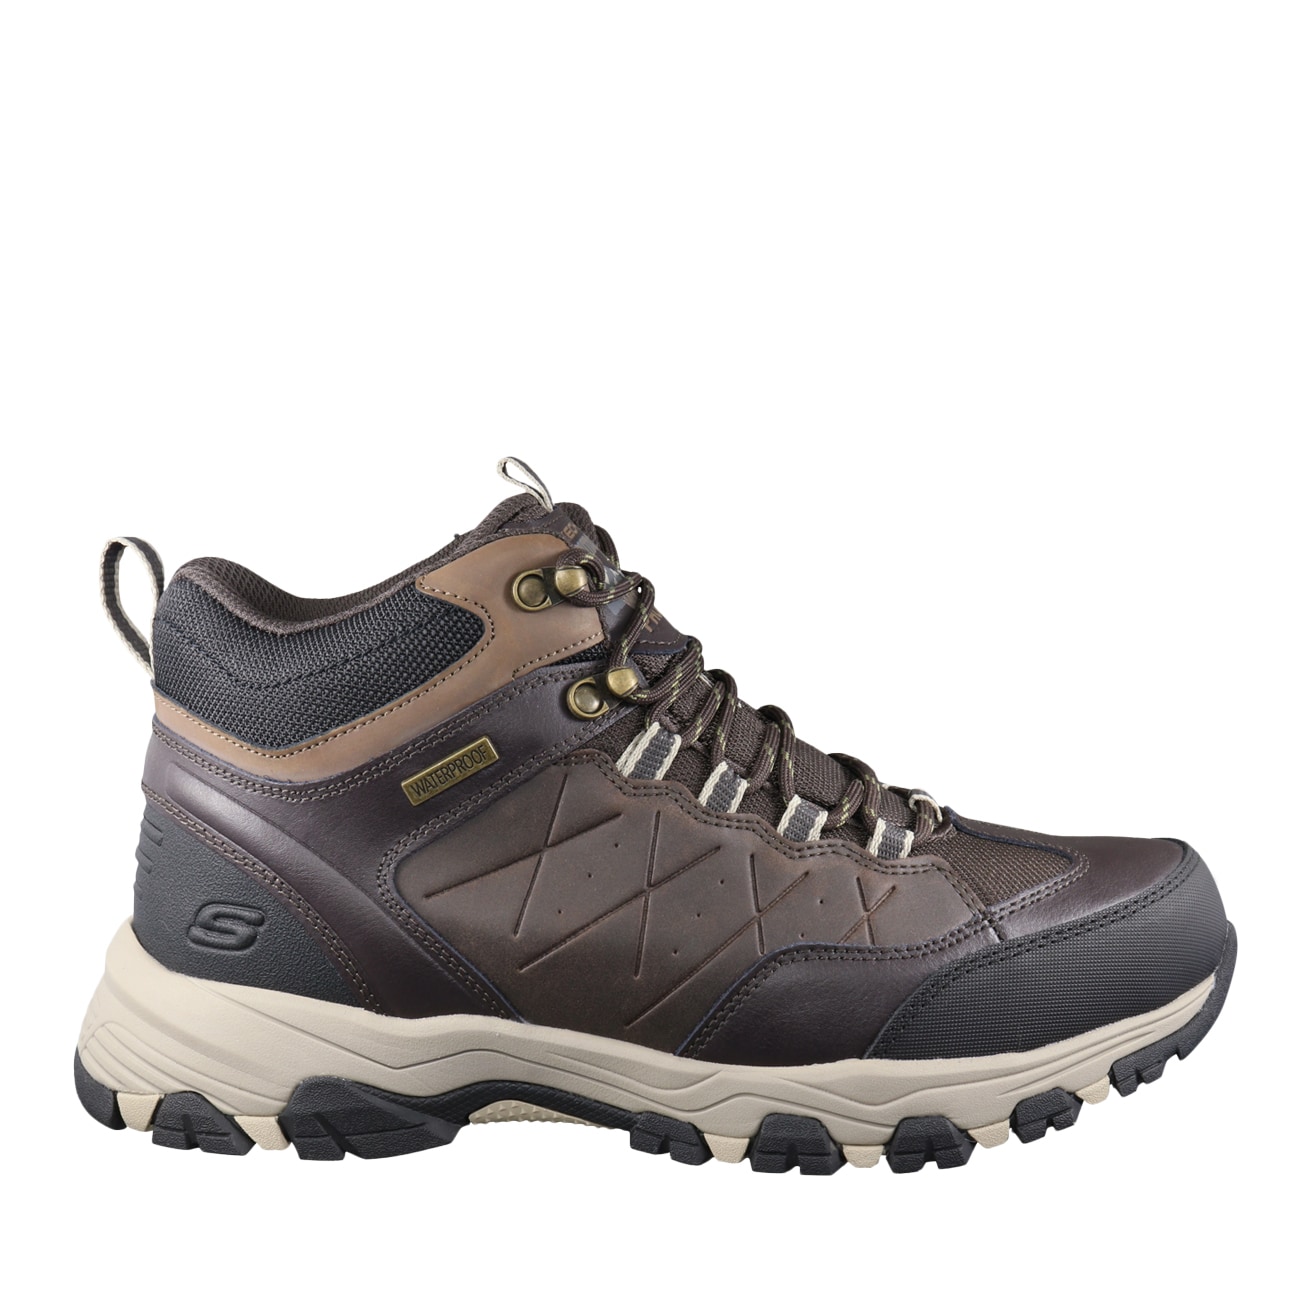 skechers memory foam hiking boots